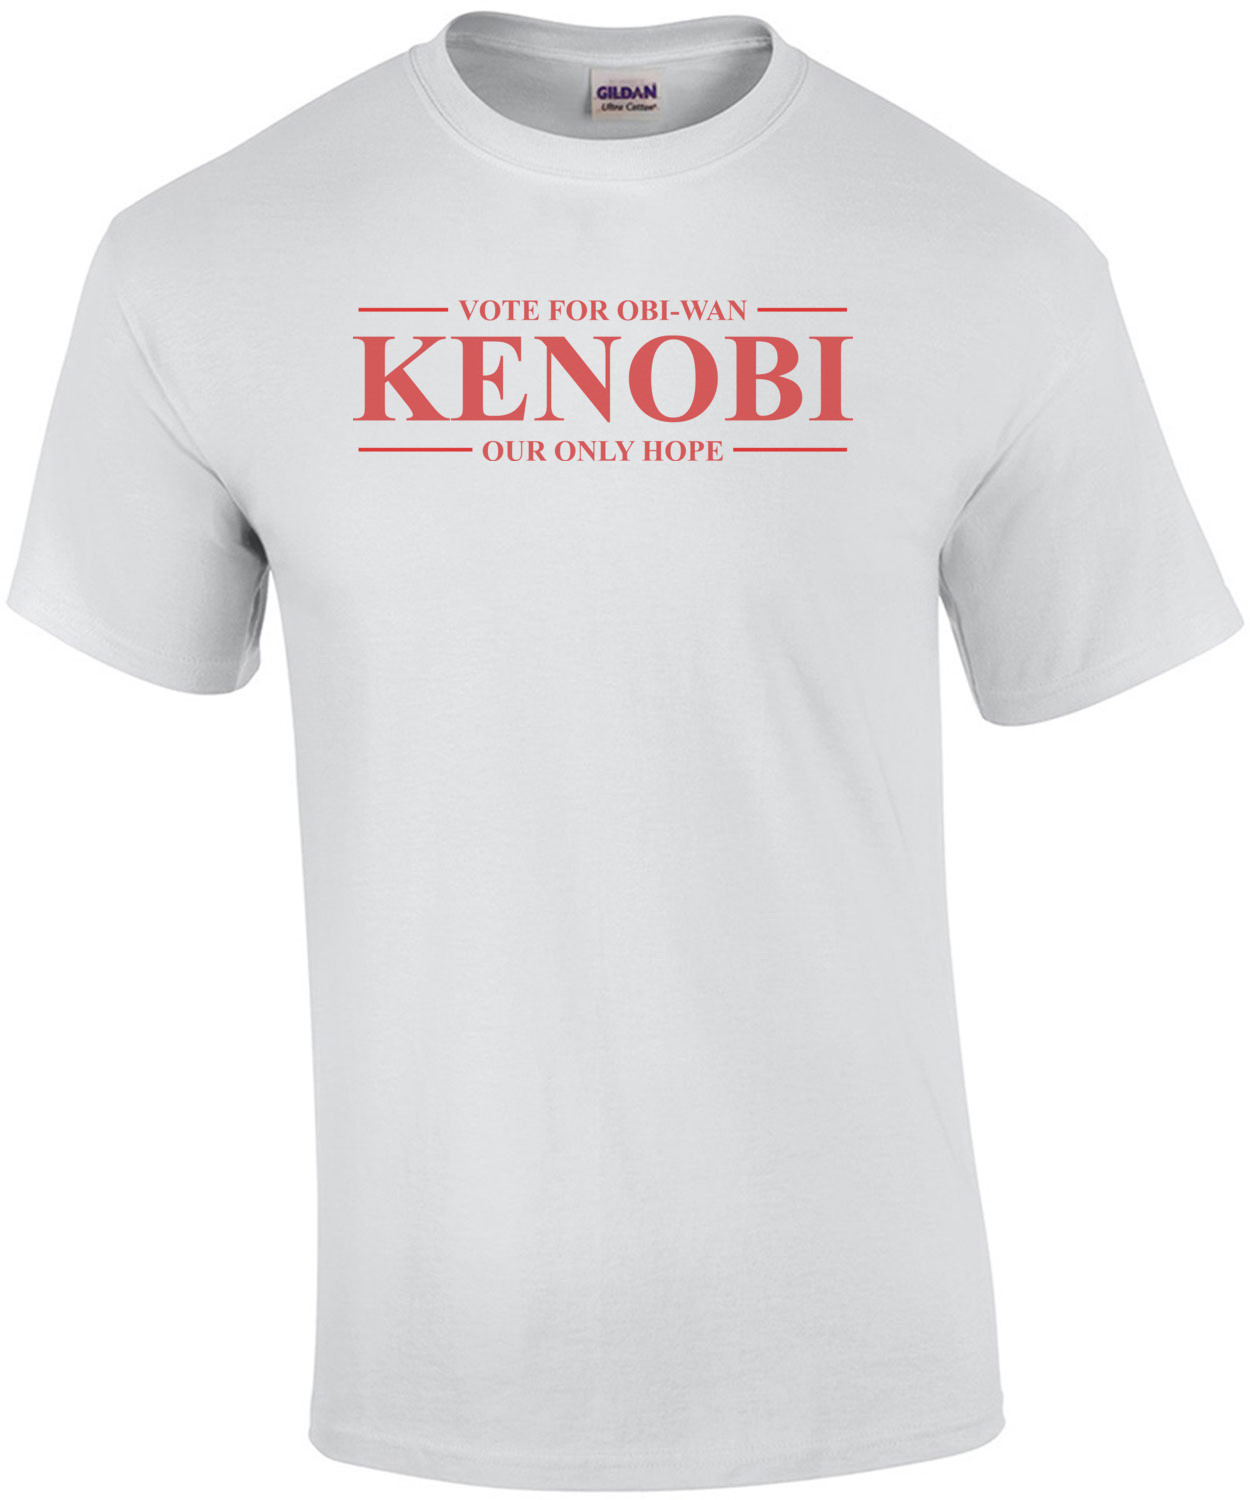 Vote For Obi-Wan Kenobi Shirt